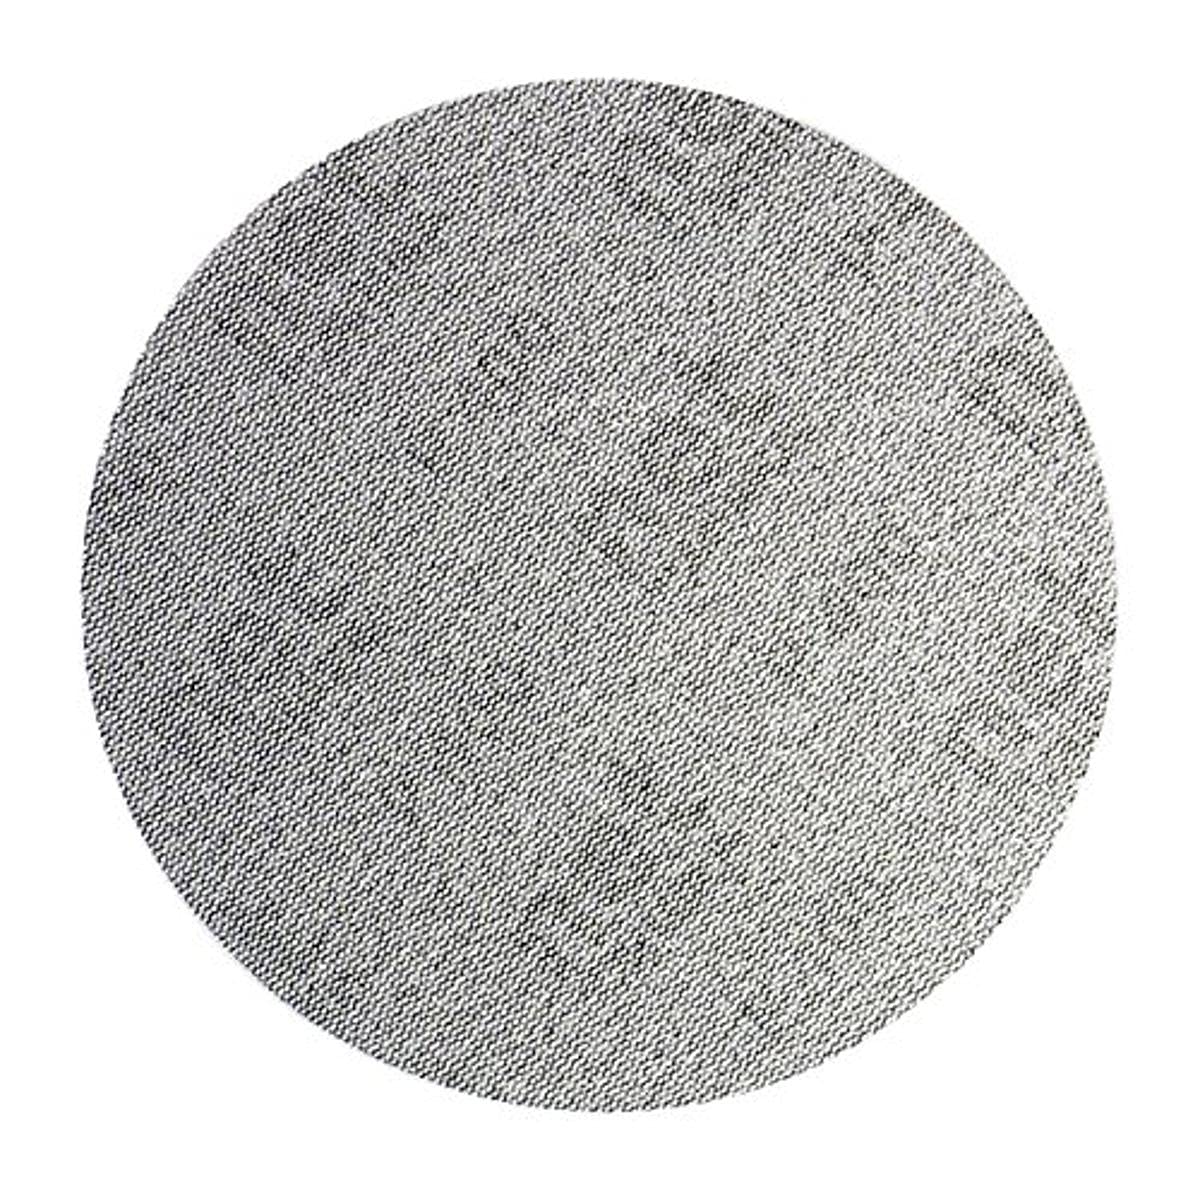 Mirka AE24105012 Autonet Sanding Disc - 150mm Grip - P120 Grit - Körnung: Aluminiumoxid auf Kunstharz über Kunstharz - PA Netz / PES Netz - Beschichtung: Geschlossen - Grau - Packung enthält 50 Stück